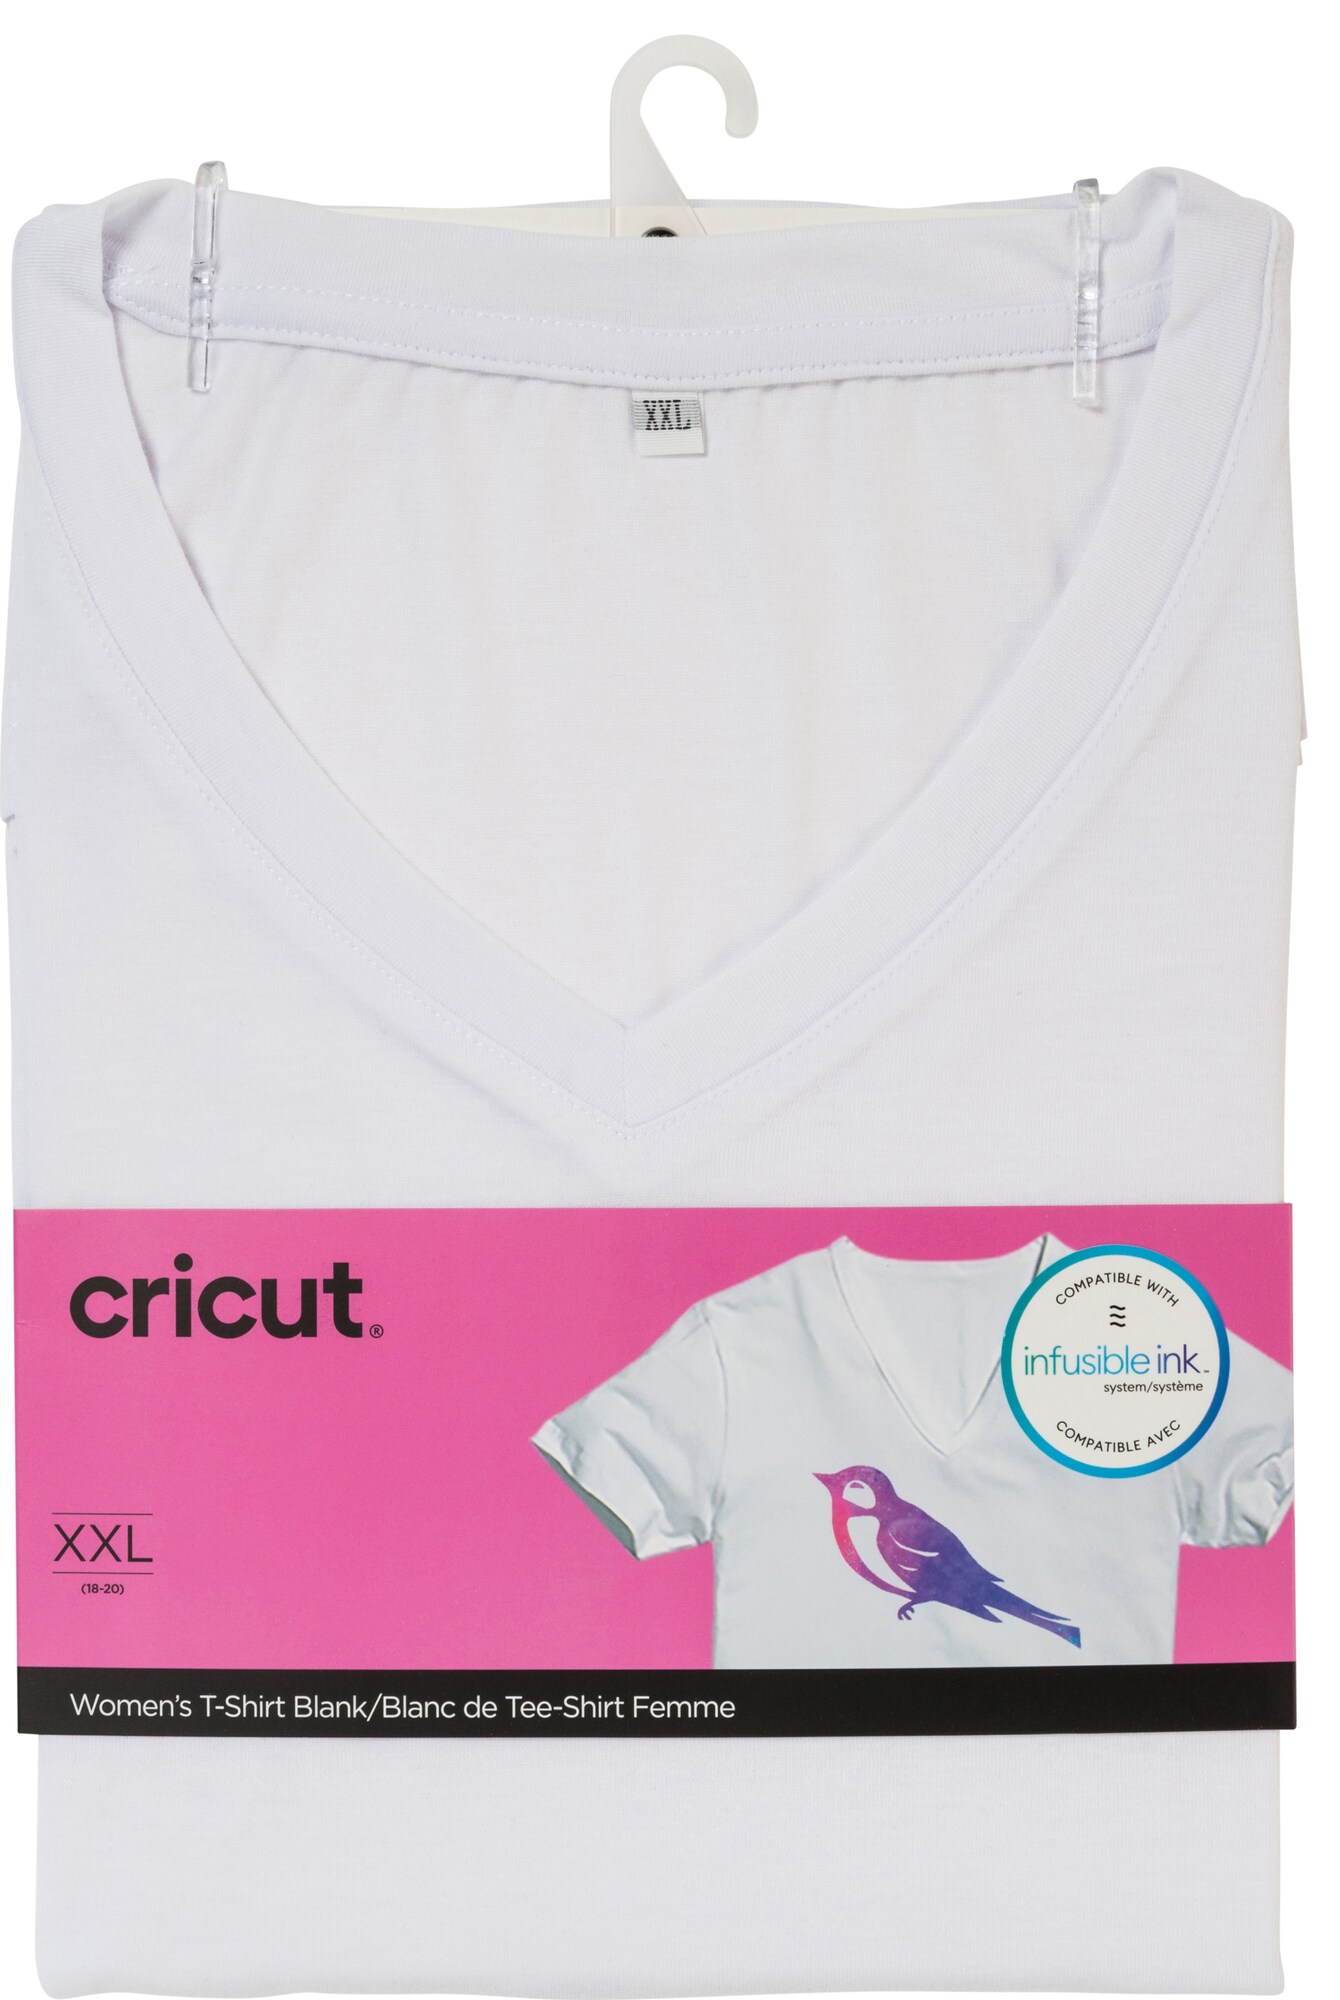 Cricut Infusible Ink naisten valkoinen t-paita (XXL) - Gigantti verkkokauppa